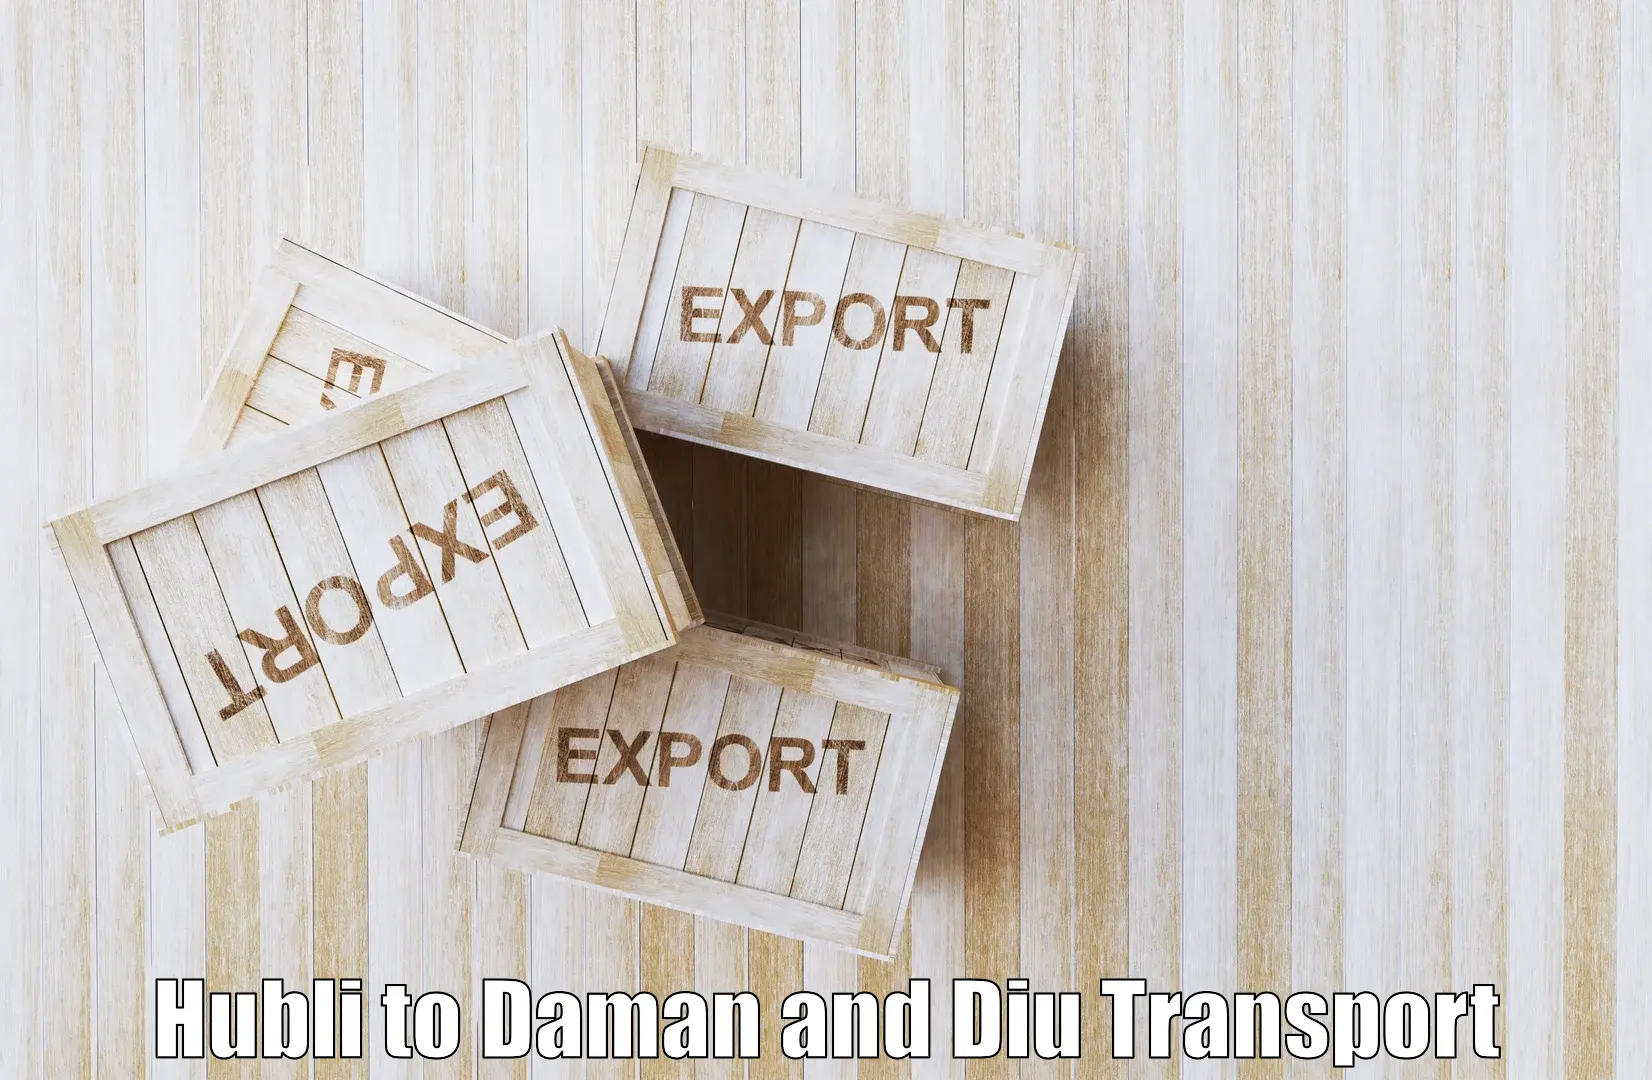 Interstate goods transport Hubli to Daman and Diu